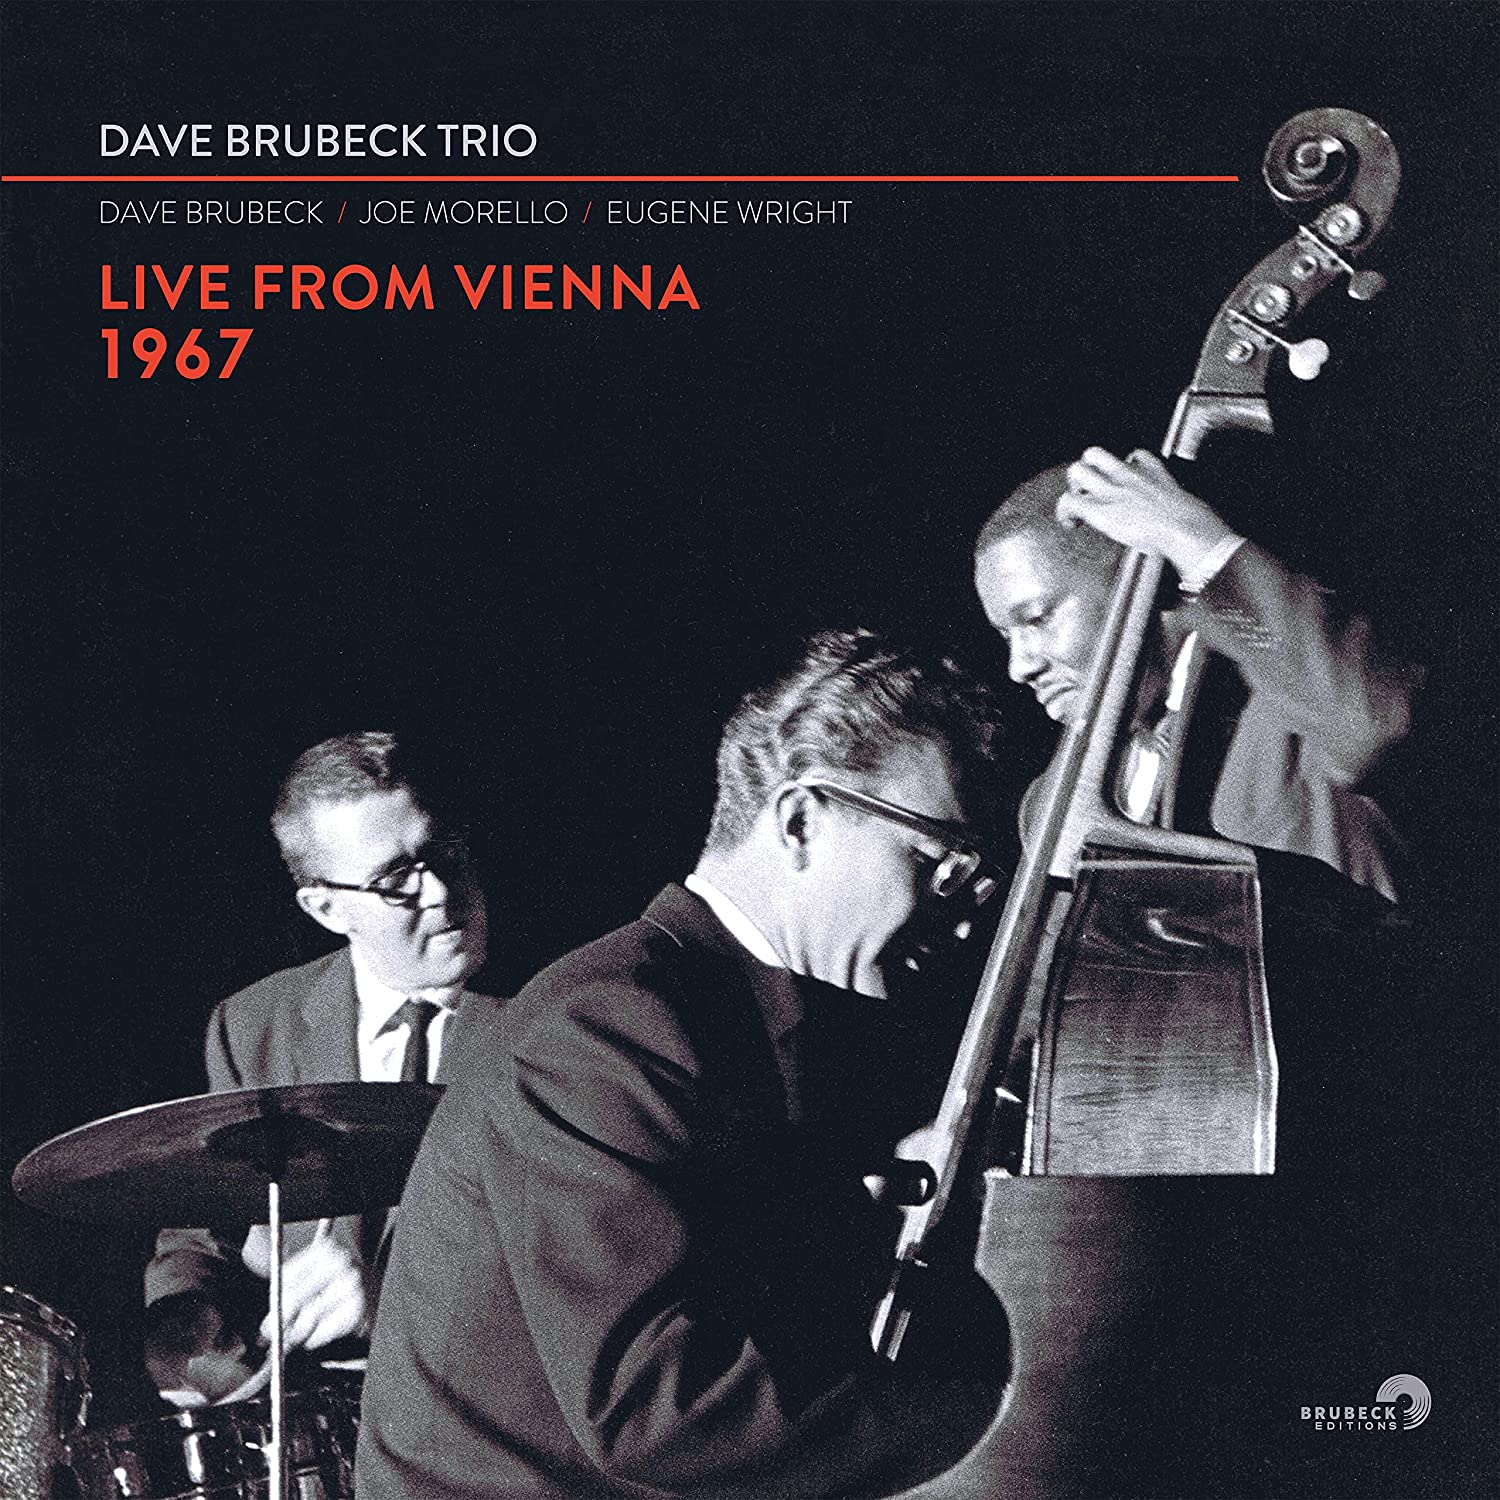 DAVE BRUBECK TRIO - Live From Vienna 1967